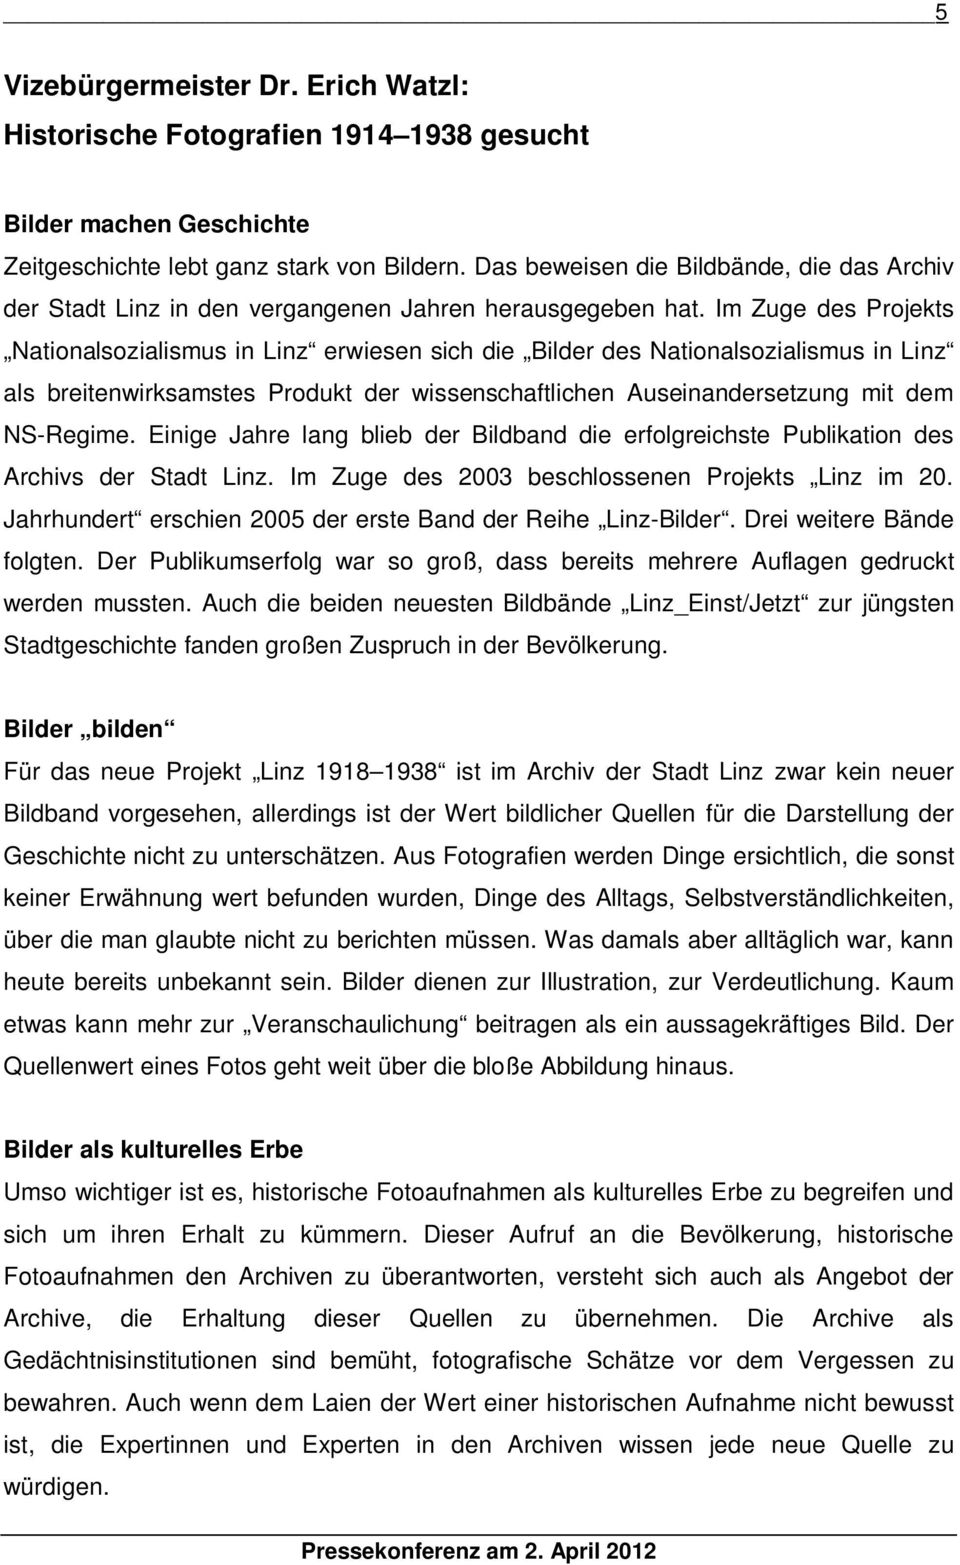 Im Zuge des Projekts Nationalsozialismus in Linz erwiesen sich die Bilder des Nationalsozialismus in Linz als breitenwirksamstes Produkt der wissenschaftlichen Auseinandersetzung mit dem NS-Regime.